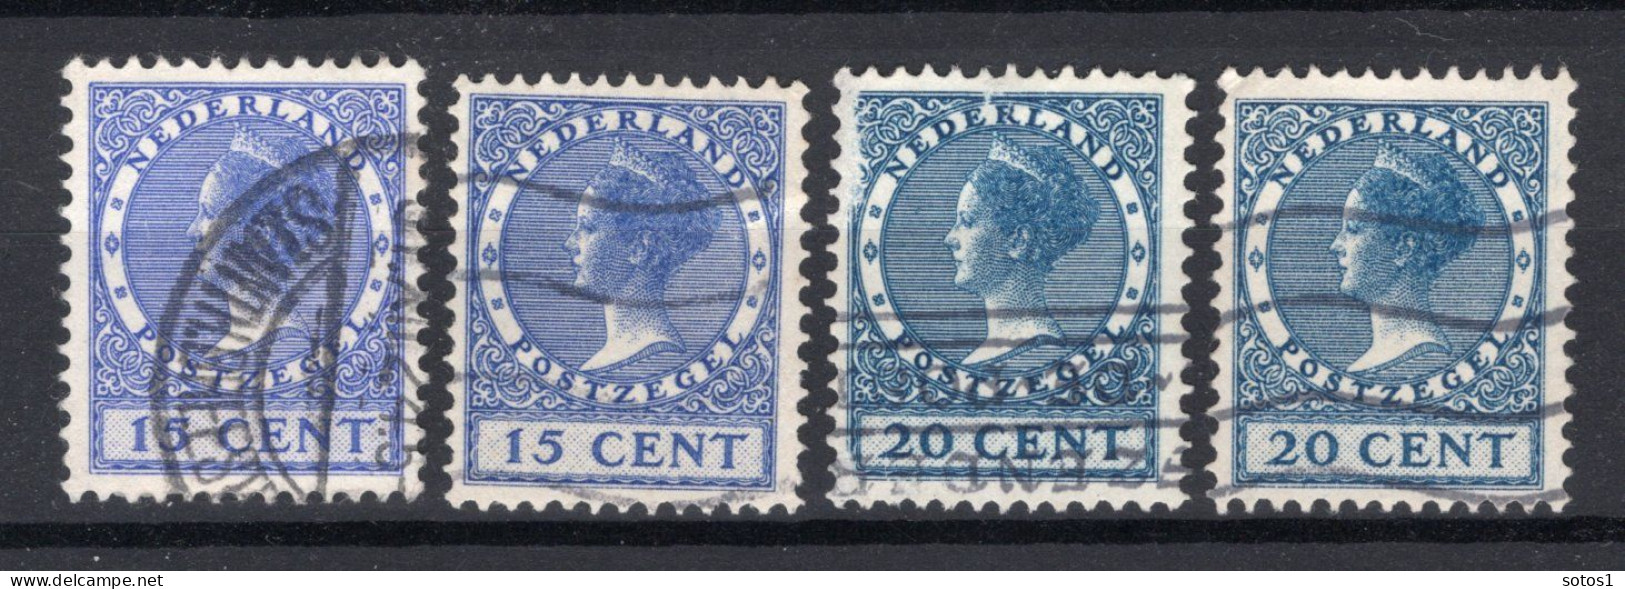 NEDERLAND 155/156 Gestempeld 1924-1926 - Koningin Wilhelmina (2 Stuks) - Used Stamps